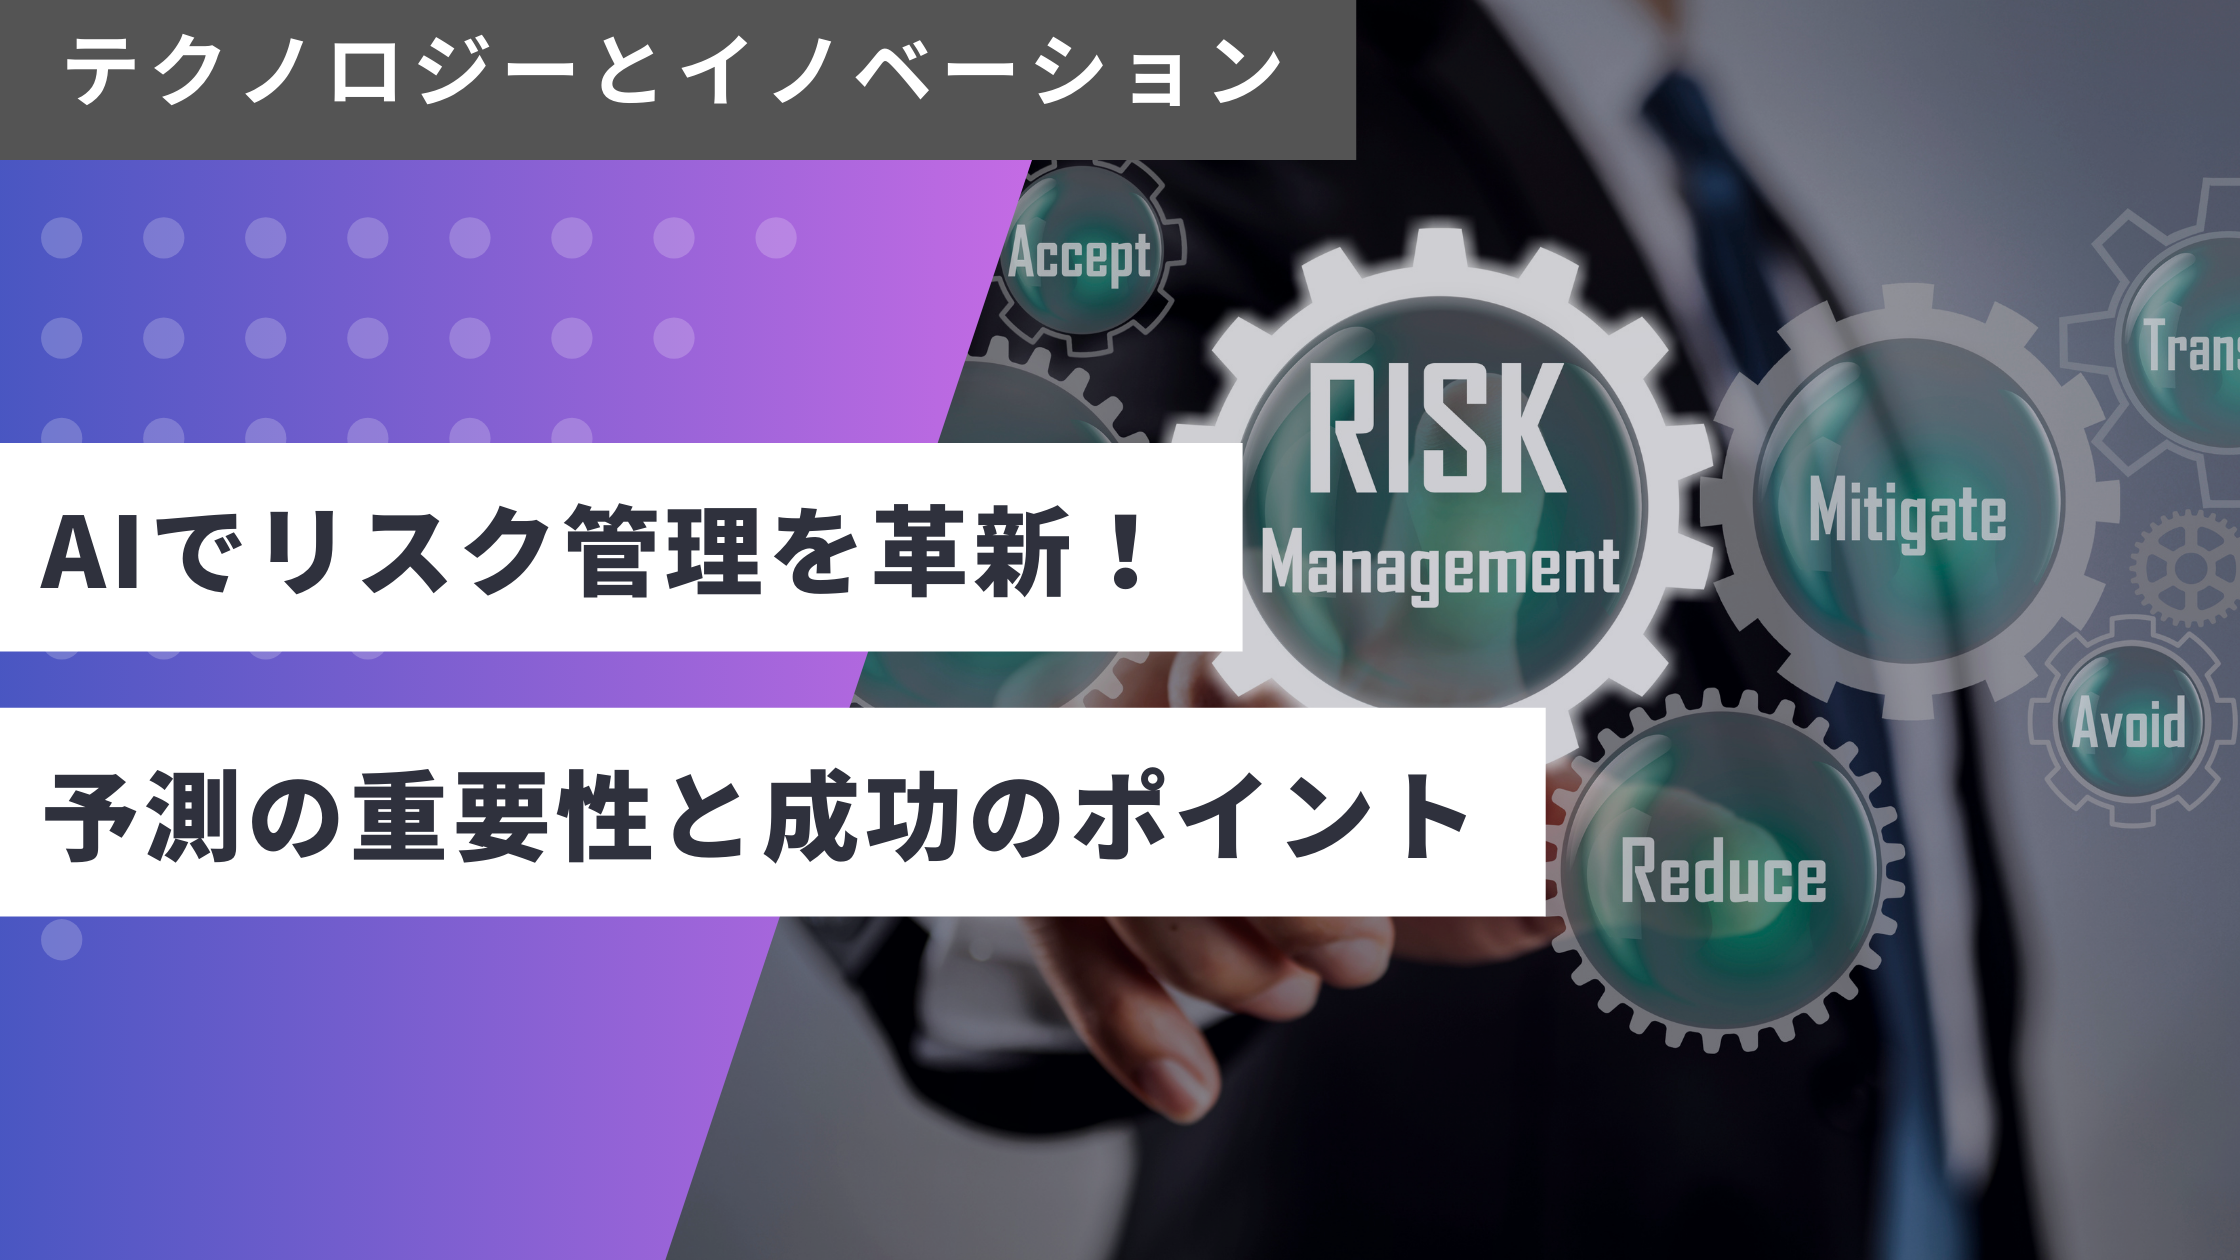 AIによるリスク管理: 未来のビジネスリスクを先読みする